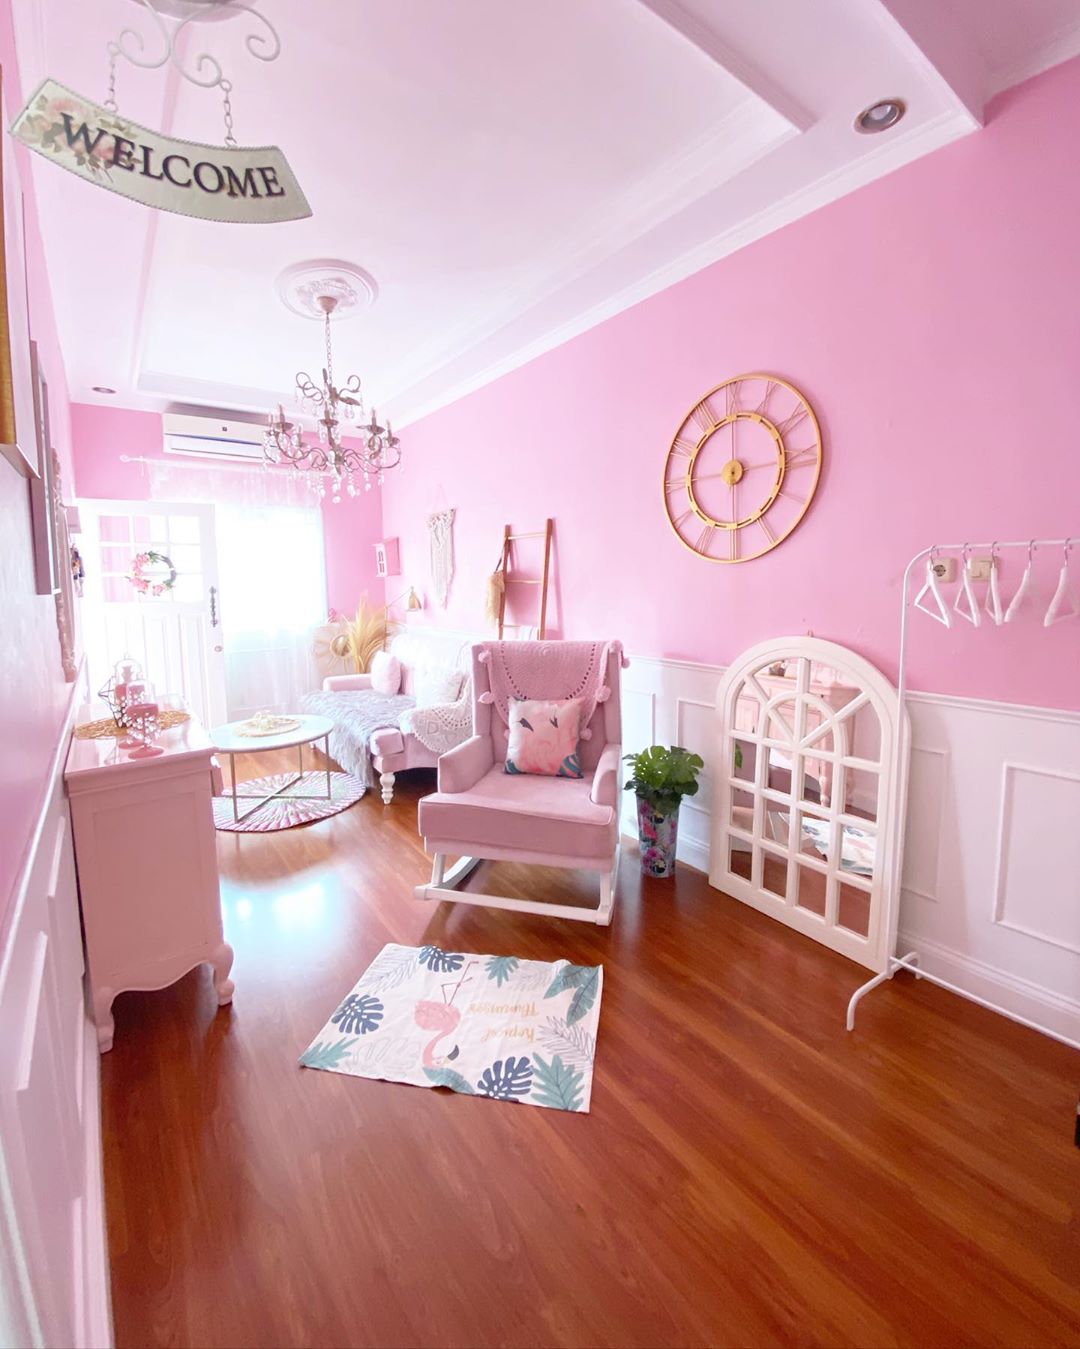 Terbaru Warna Cat Tembok Ruang Tamu Yang Bagus Pink